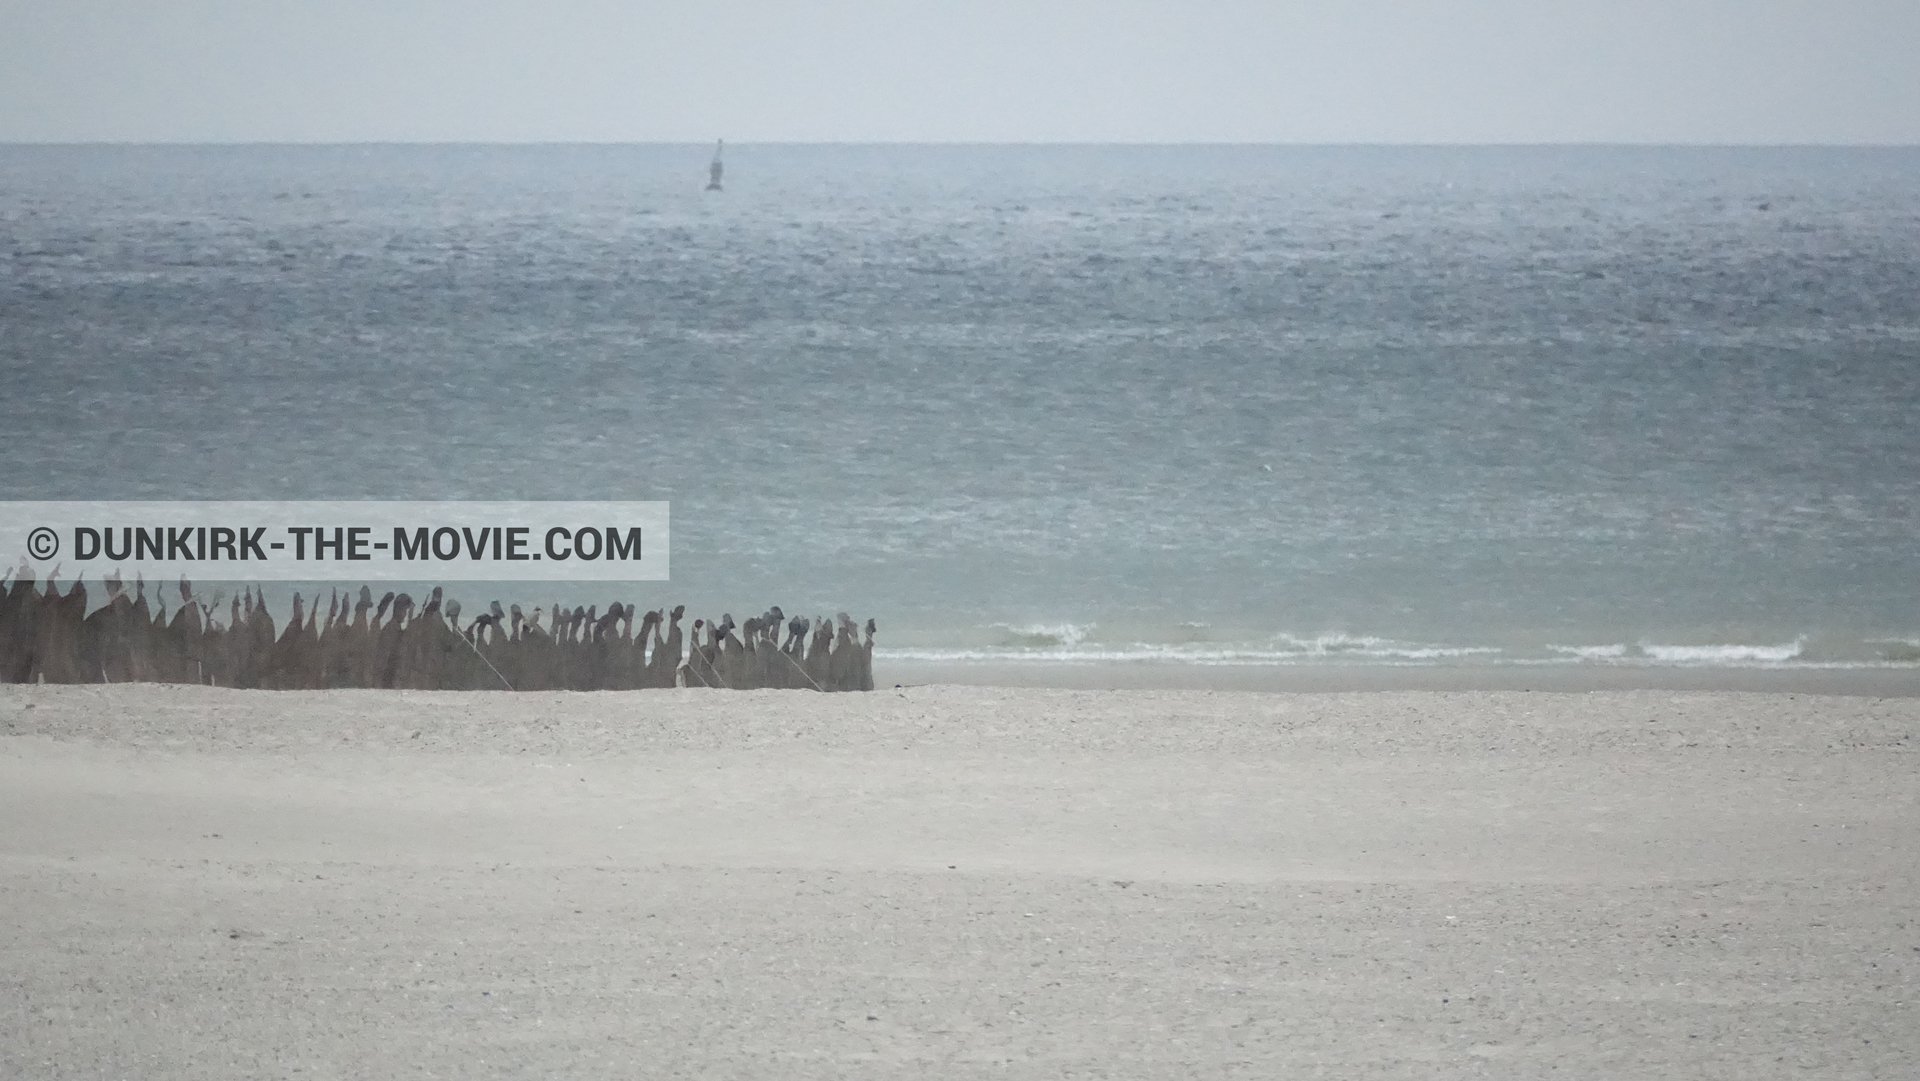 Fotos con cielo gris, decoración, playa,  durante el rodaje de la película Dunkerque de Nolan